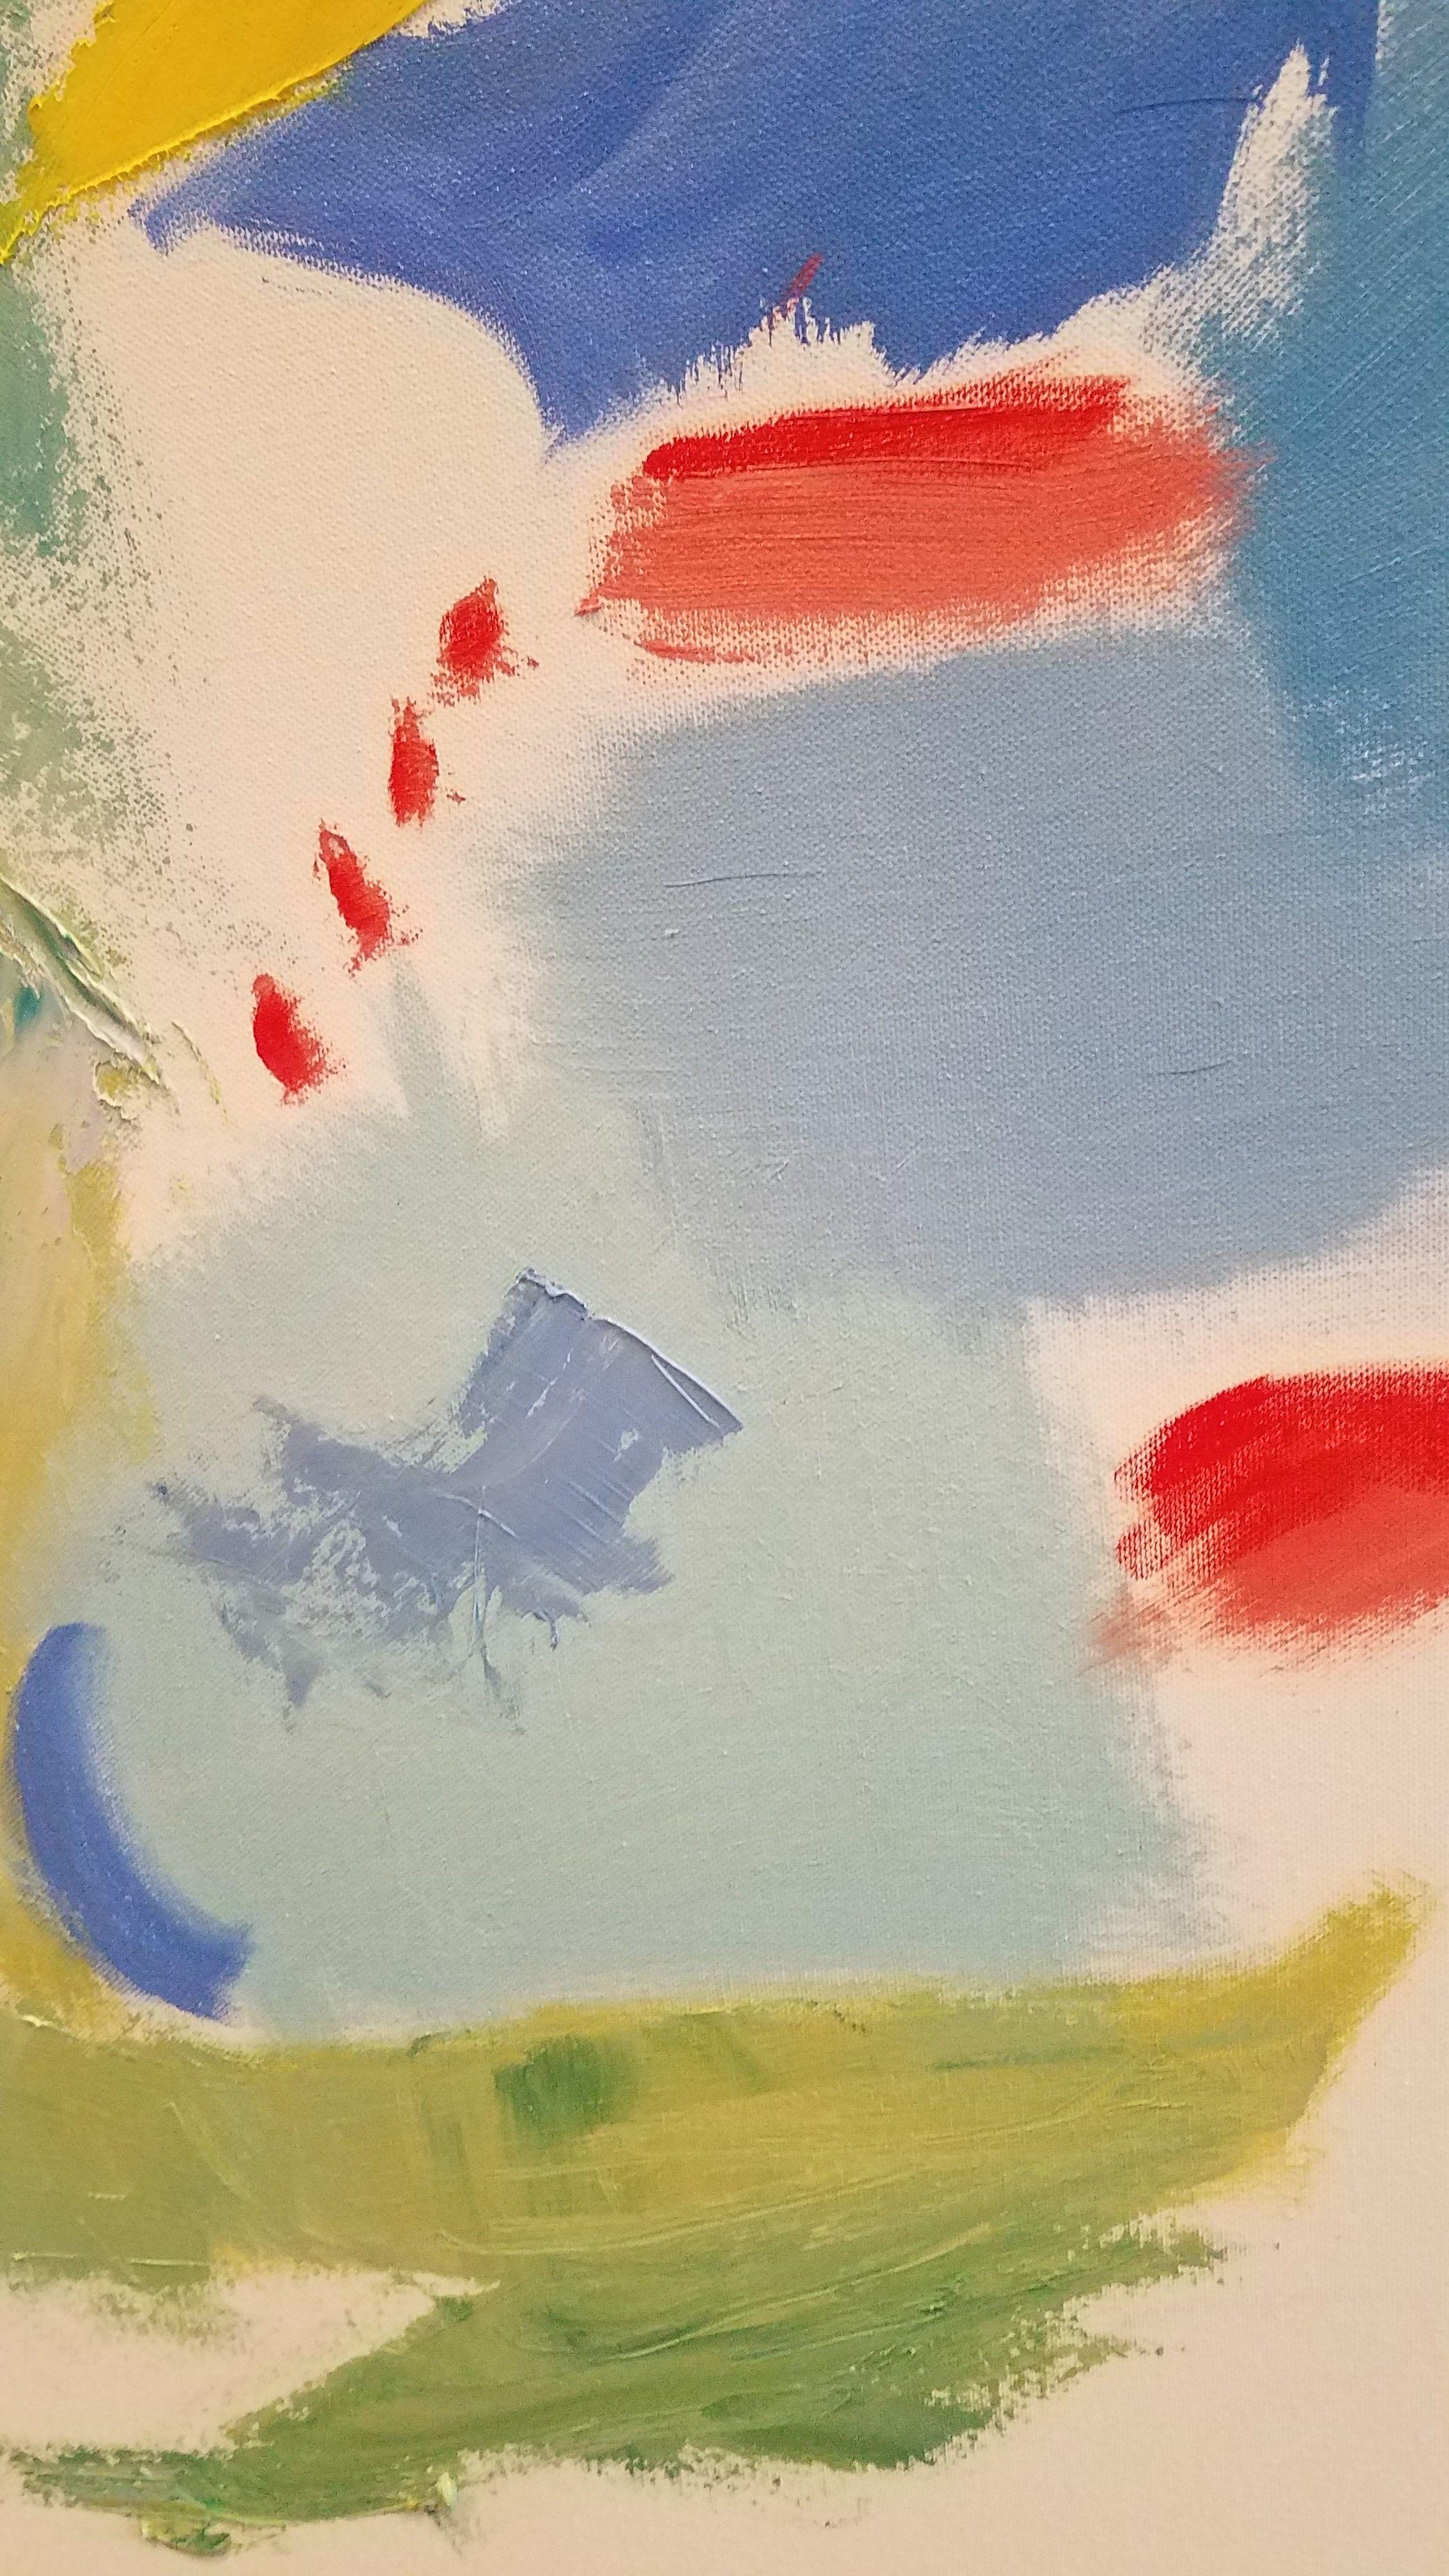 Jouer aux couleurs 1, peinture, huile sur toile - Painting de Christine Frisbee